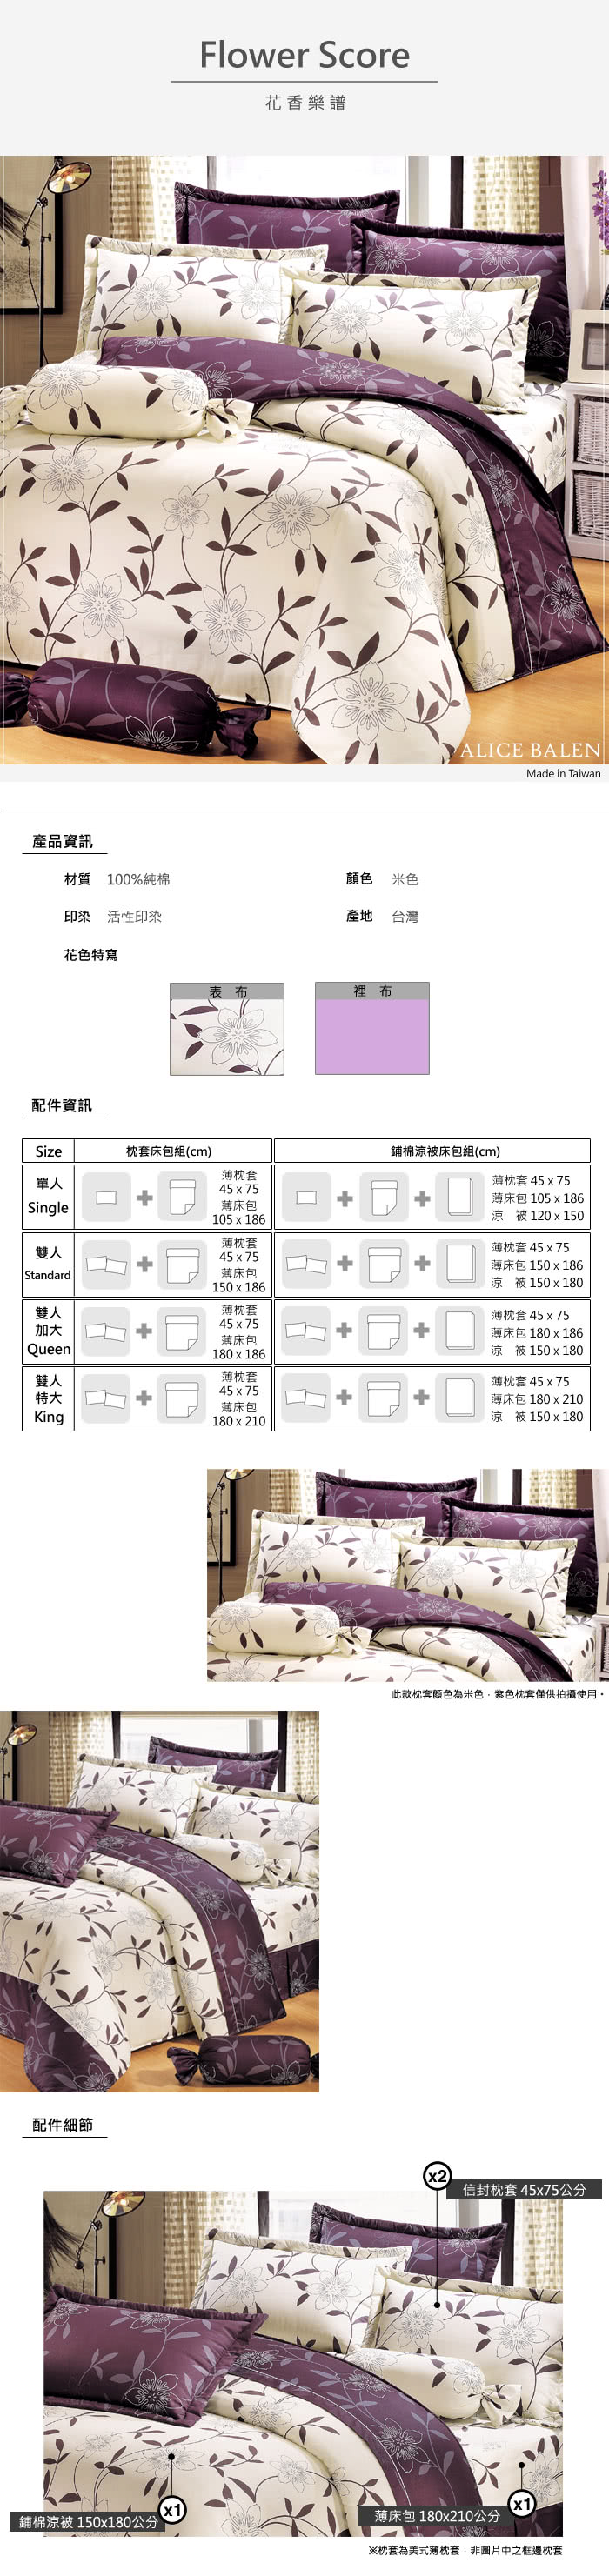 【艾莉絲-貝倫】花香樂譜(6.0呎x7.0呎)四件式雙人特大(100%純棉)鋪棉涼被床包組(米色)